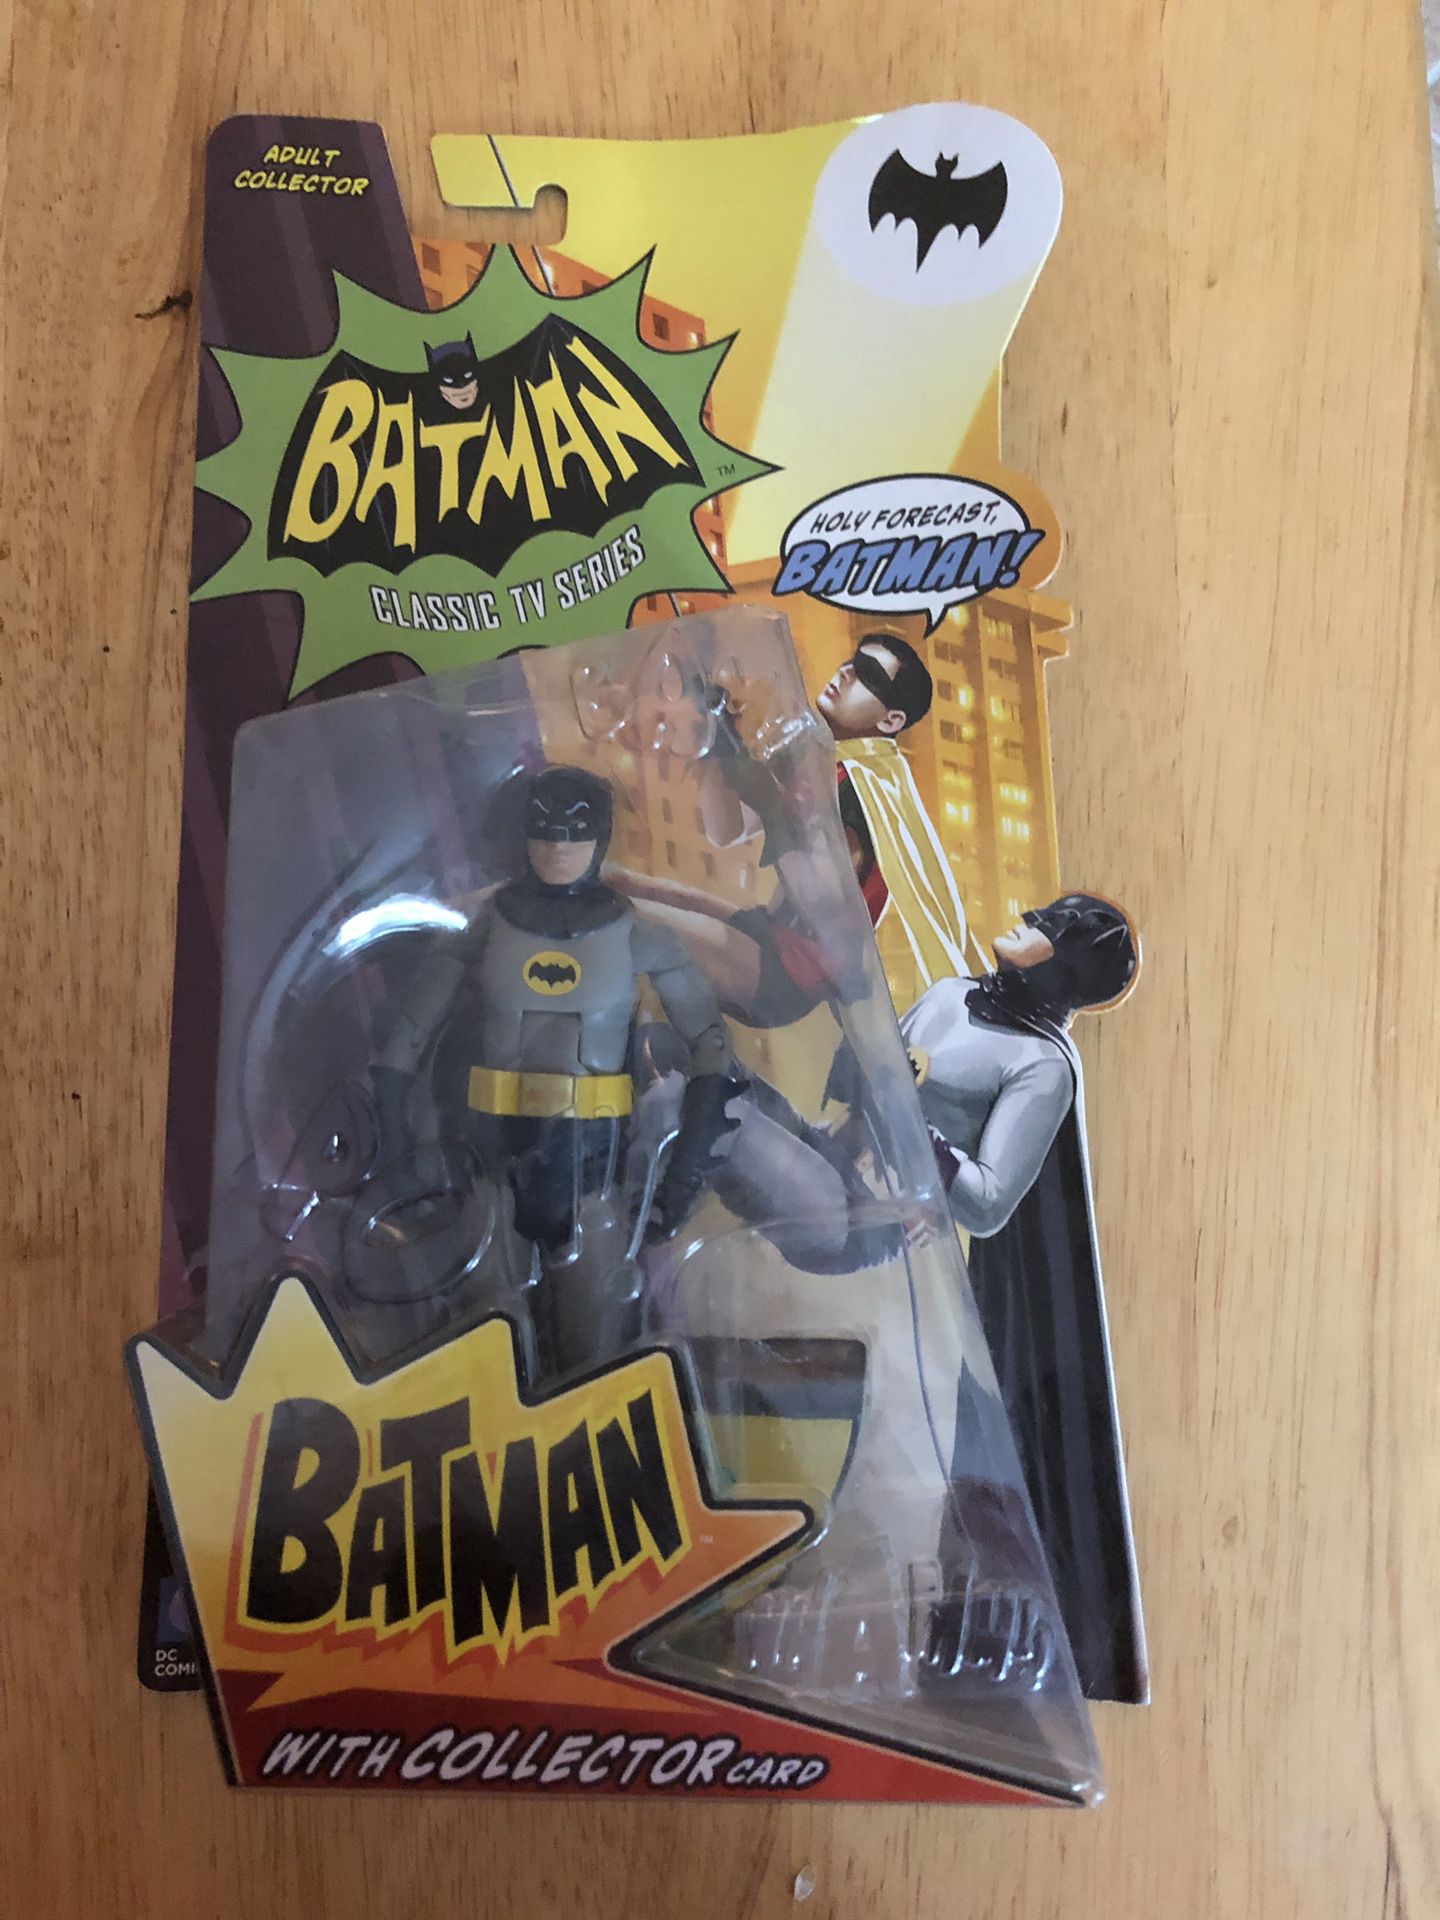 Batman ‘66 Action Figure. Mint in Box!